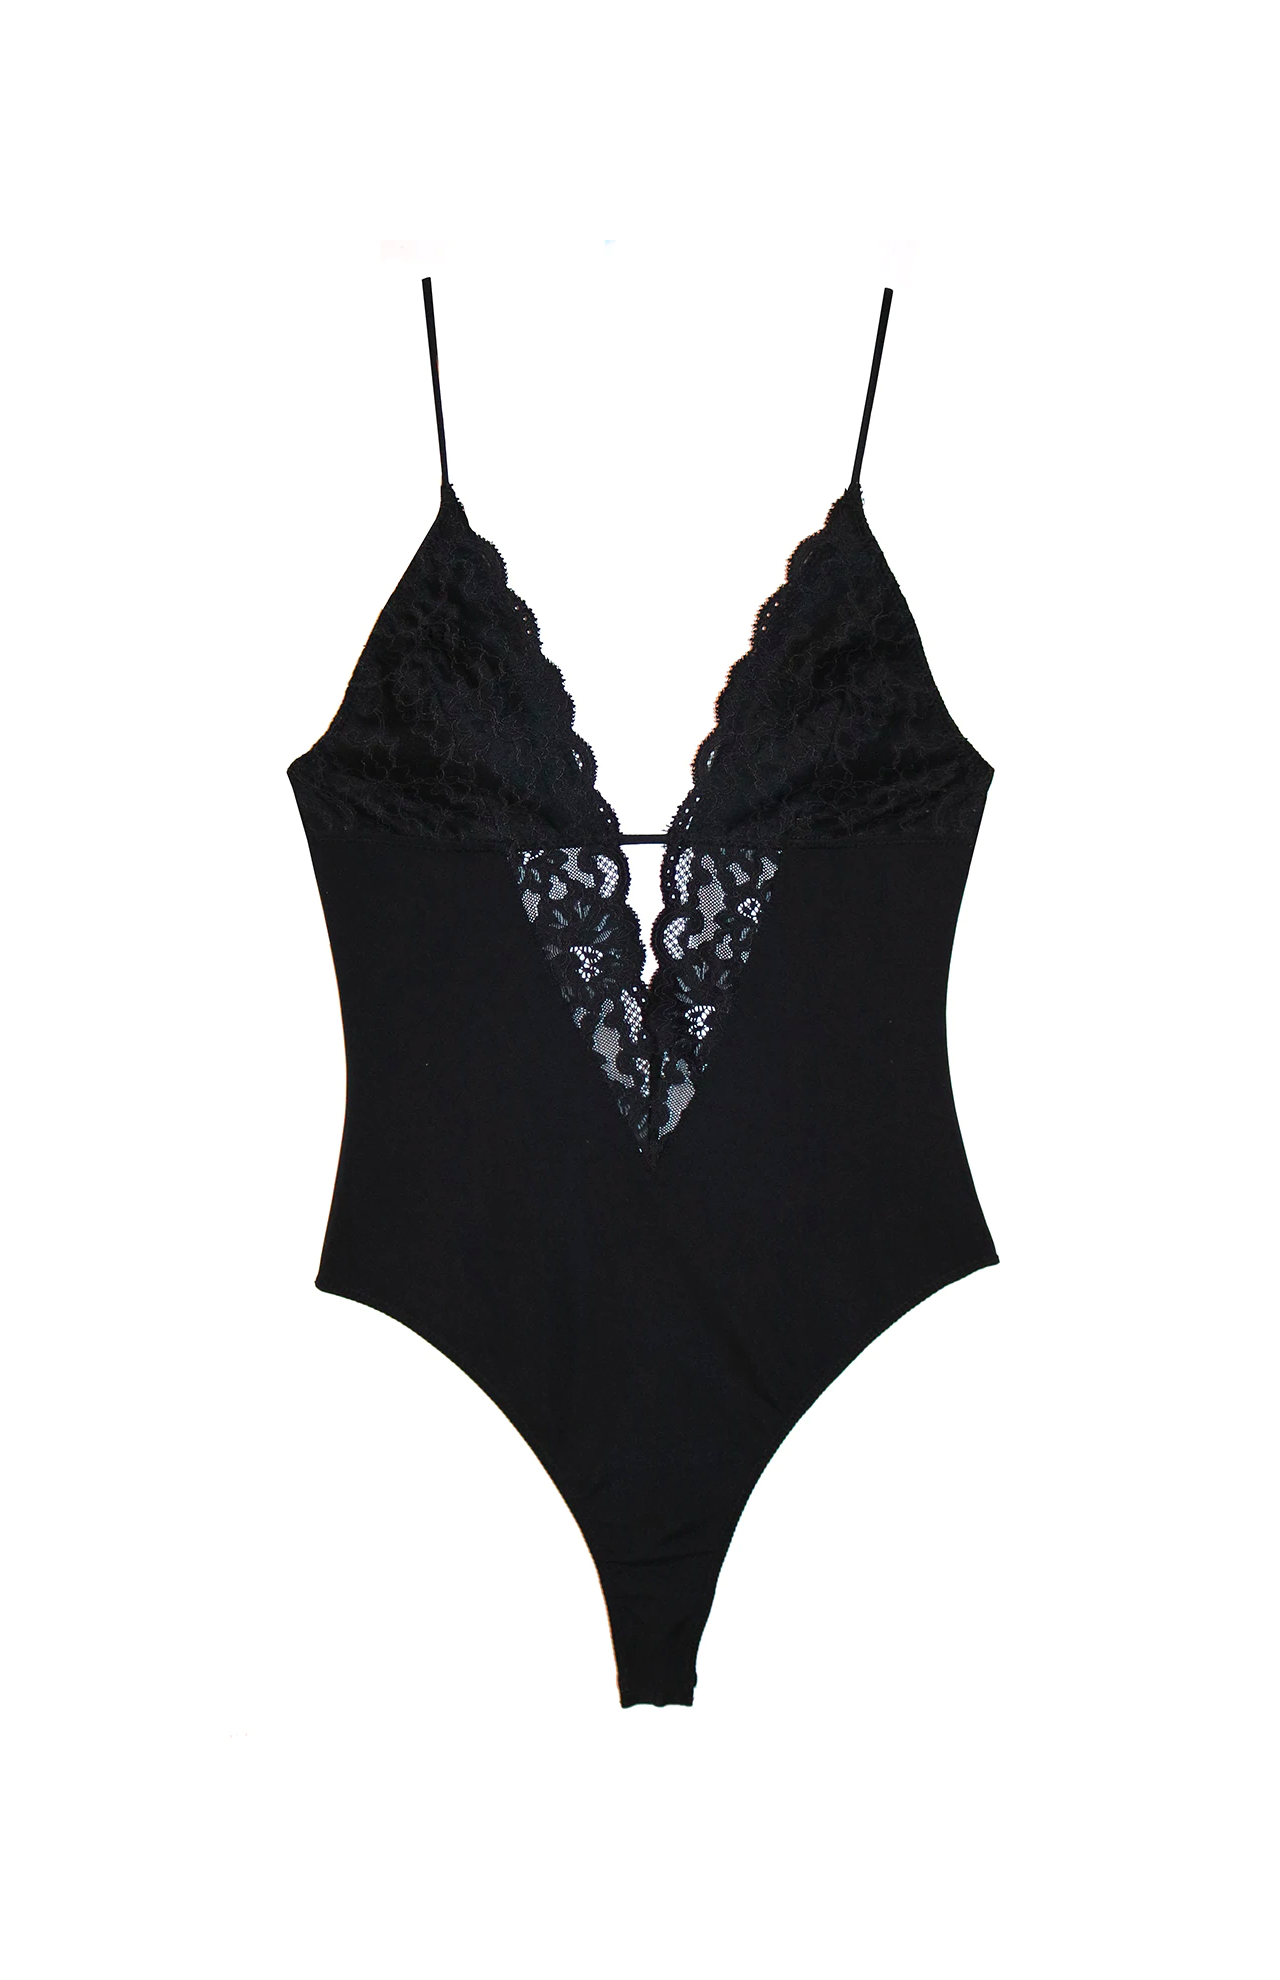 Buy La Senza unlined Lace Bodysuit (Black Orchid, L) Online - Best Price La  Senza unlined Lace Bodysuit (Black Orchid, L) - Justdial Shop Online.